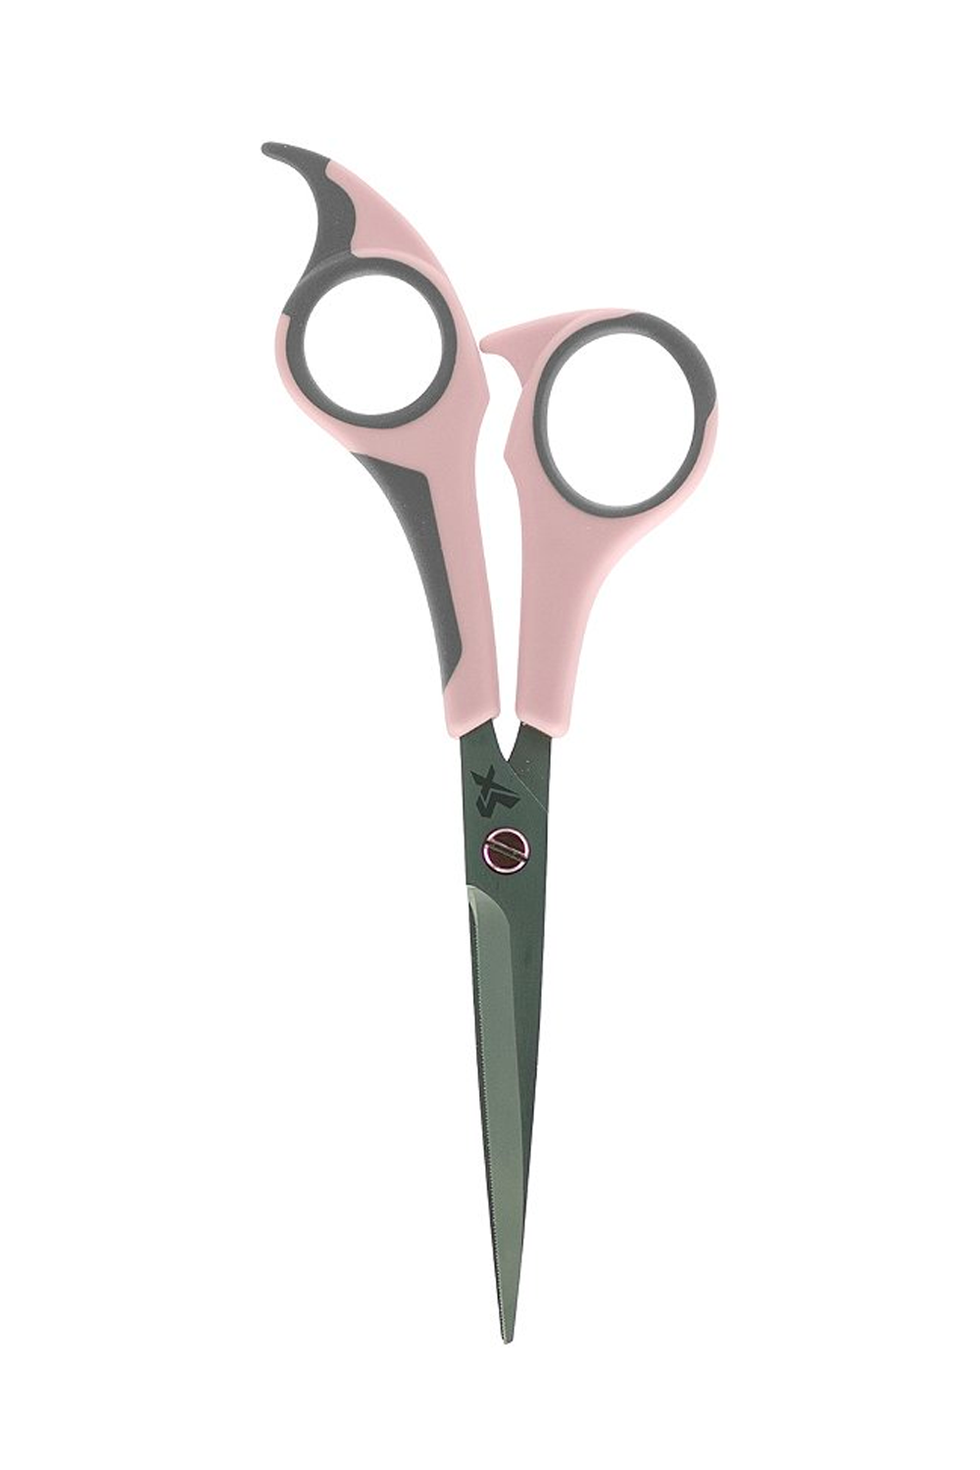 Hairdresser scissors - Master Line - cm. 13